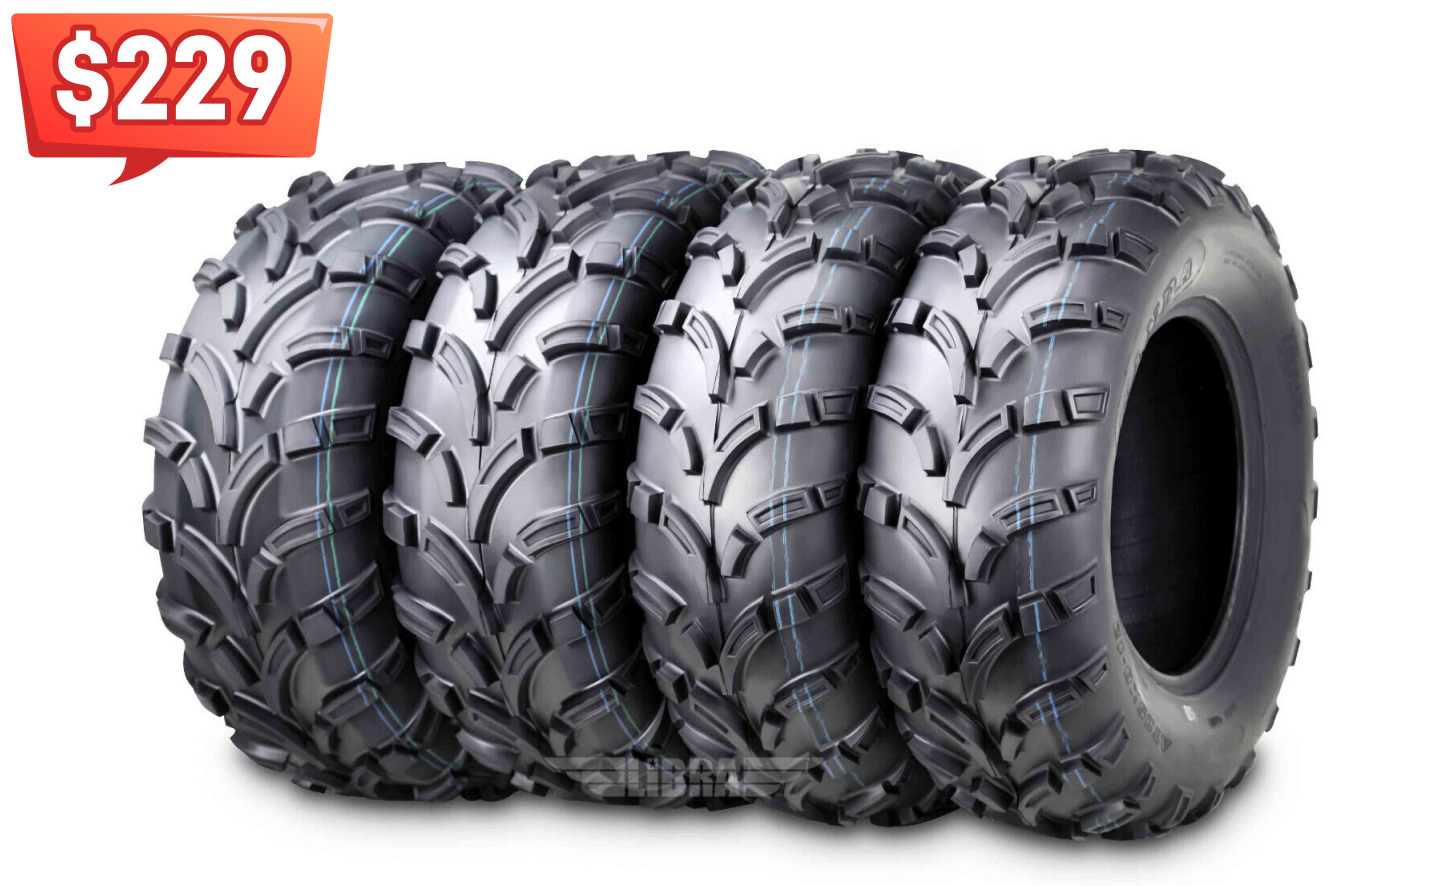 WANDA ATV Tires 25x8-12 25x8x12 Front 25x10-12 25x10x12 Rear 6PR Mud Tires [4PC]